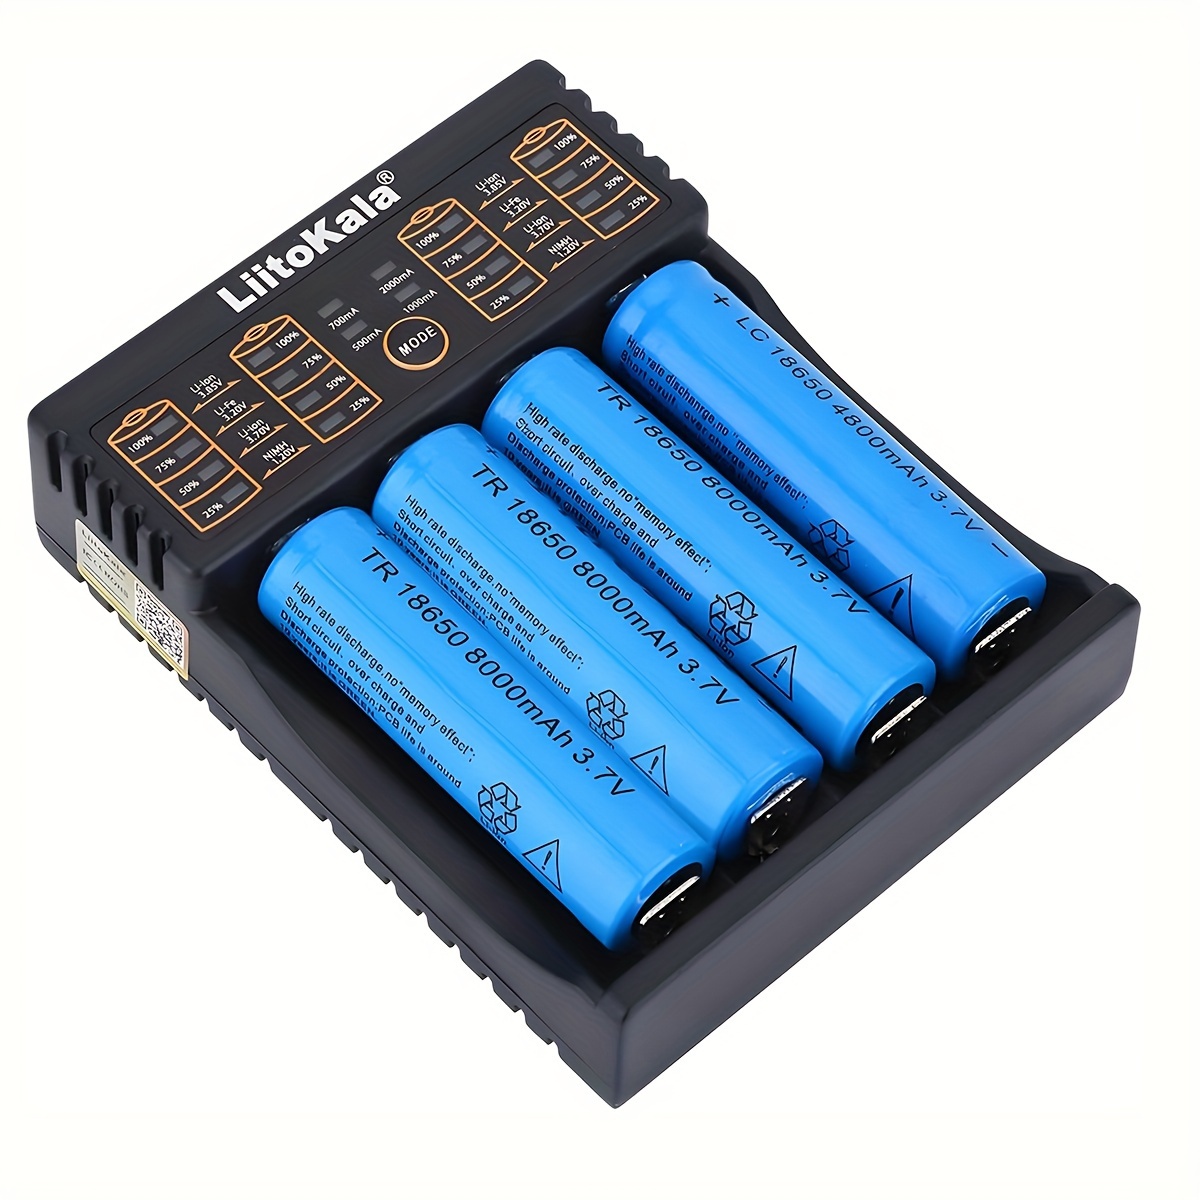 Chargeur de batterie intelligent universel à 4 baies pour batteries  rechargeables Li-ion 18650 18500 18350 17670 17500 16340 (pas de batterie)  : : Électronique